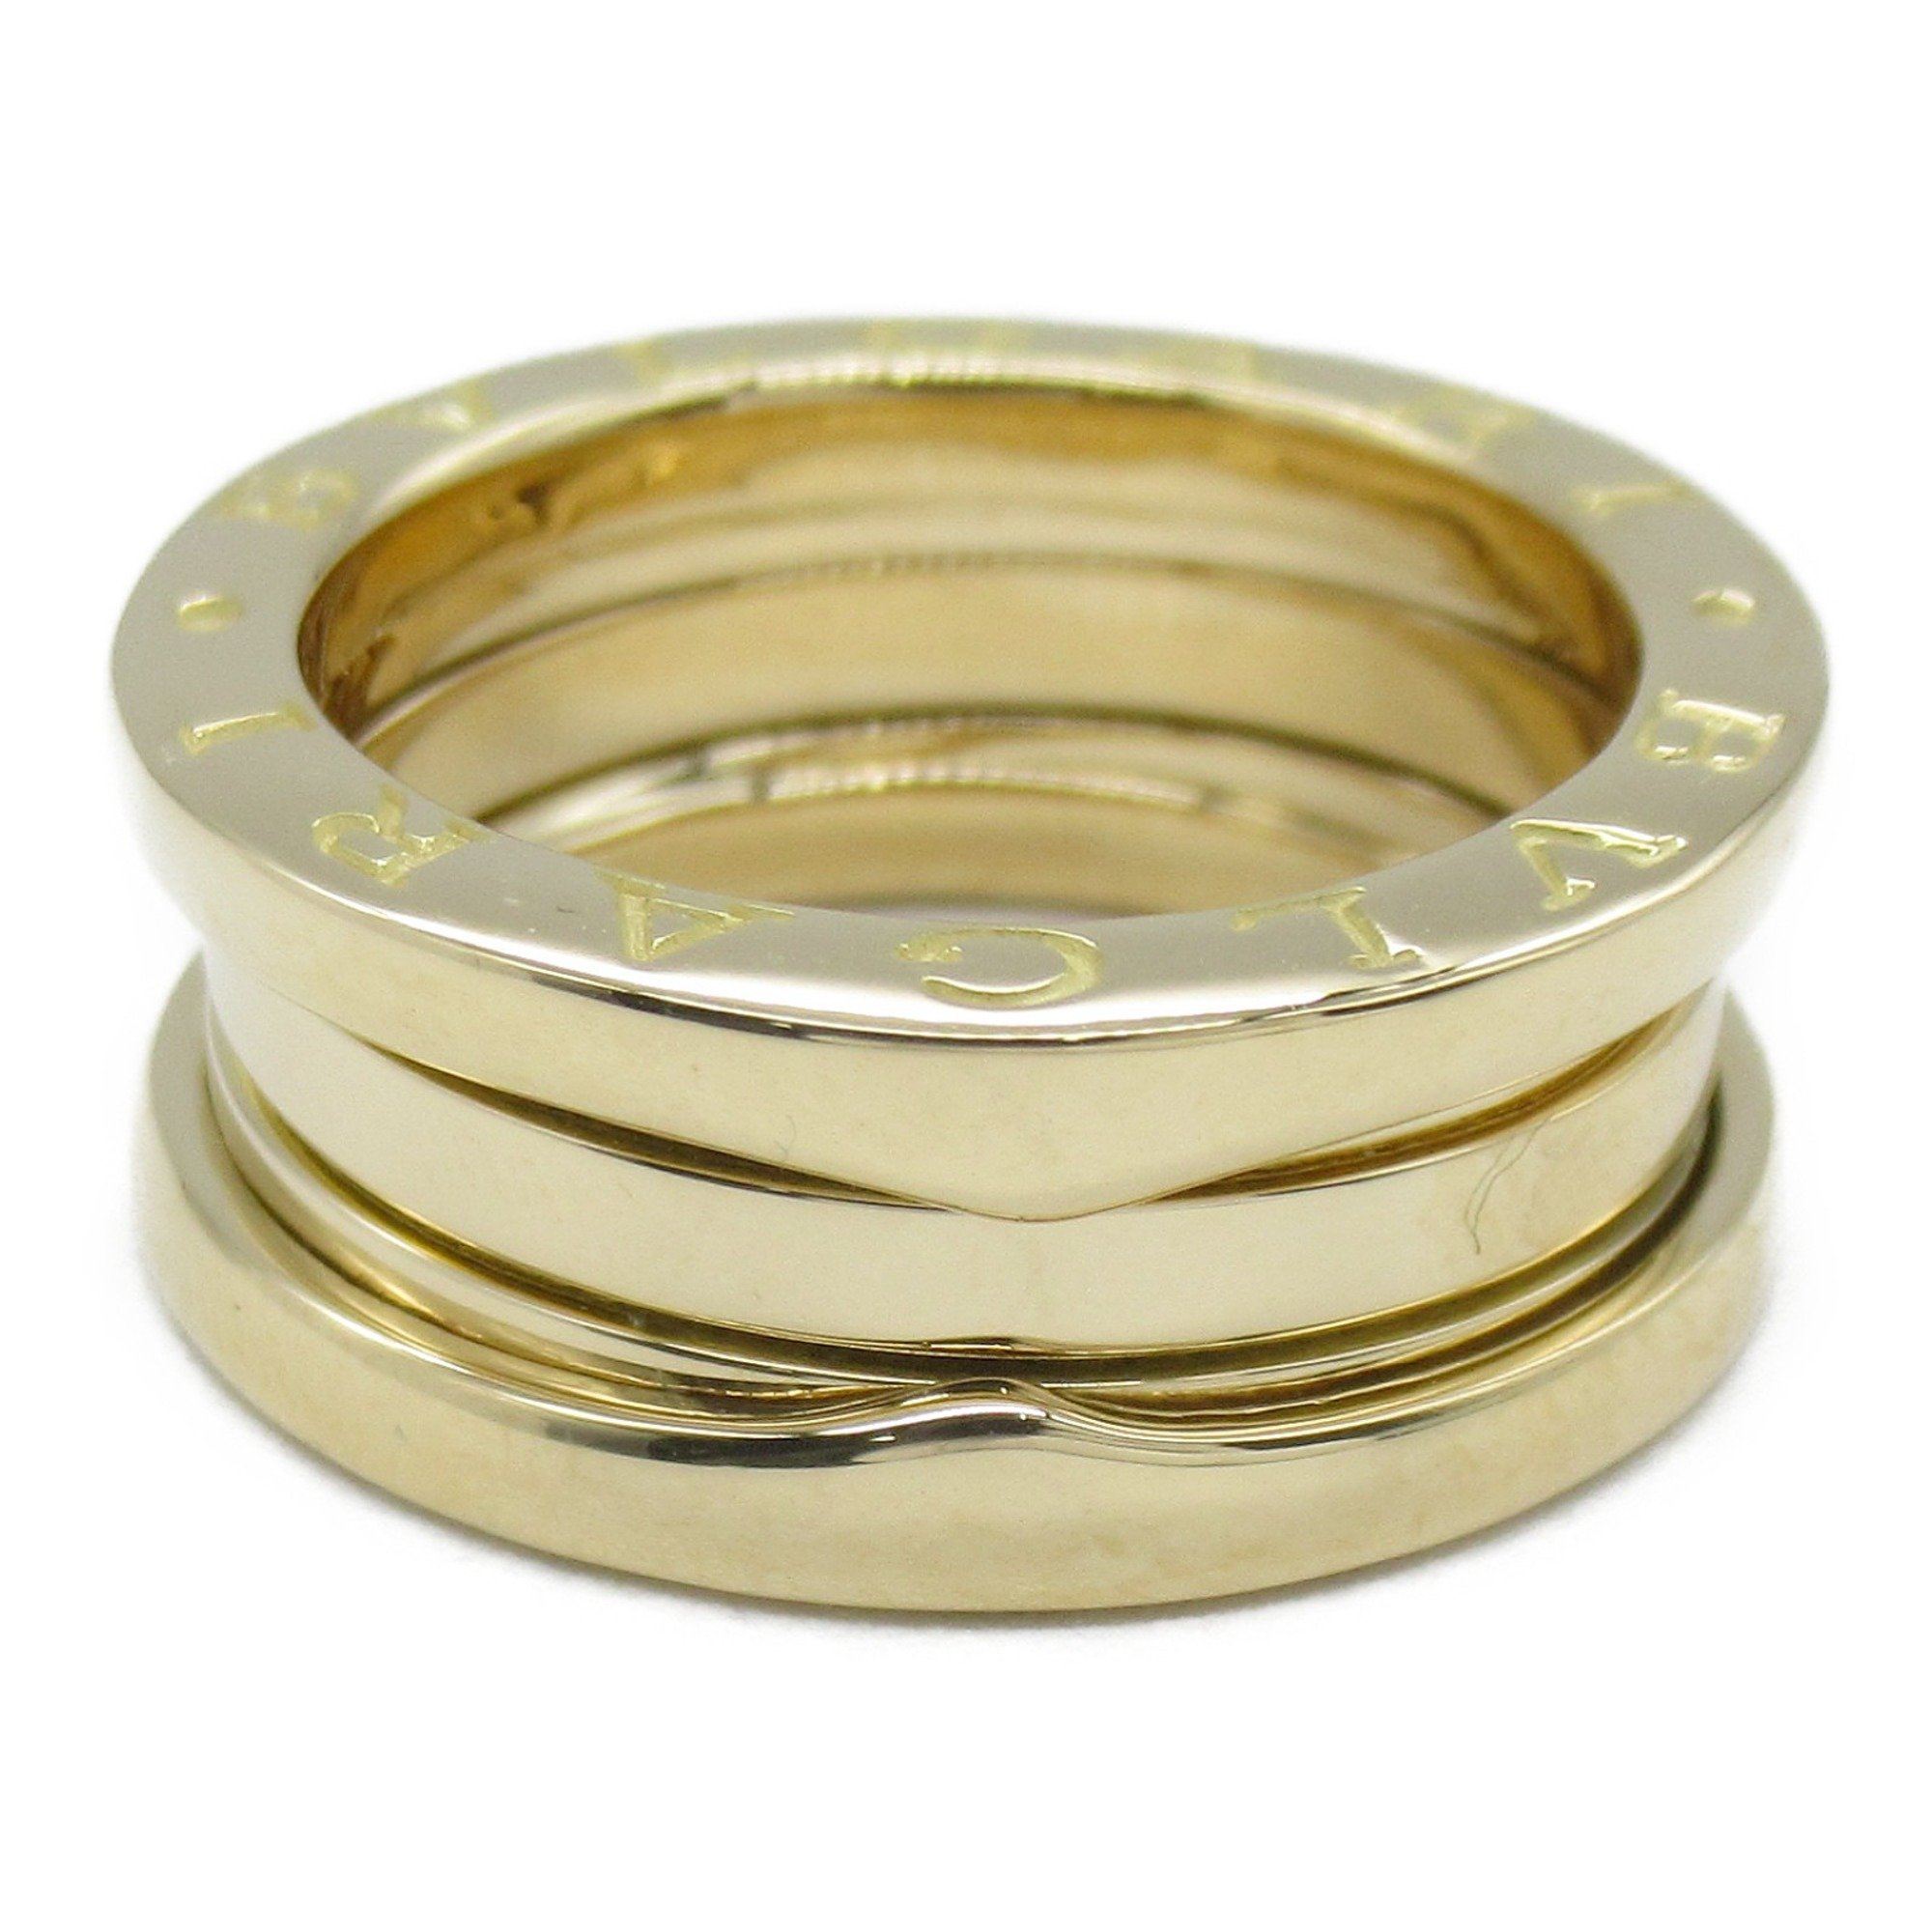 BVLGARI B-zero1 B-zero one 3 band ring Ring Gold  K18 (Yellow Gold) Gold